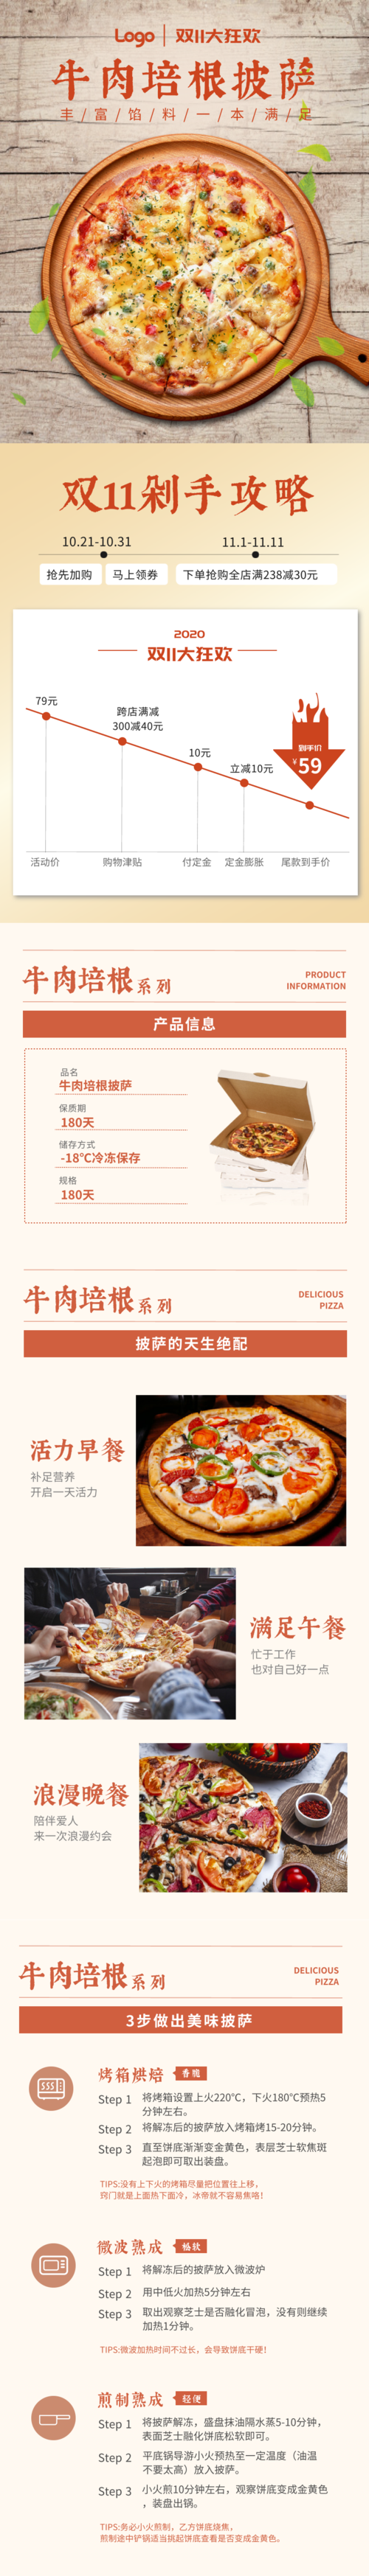 双十一食品披萨详情页